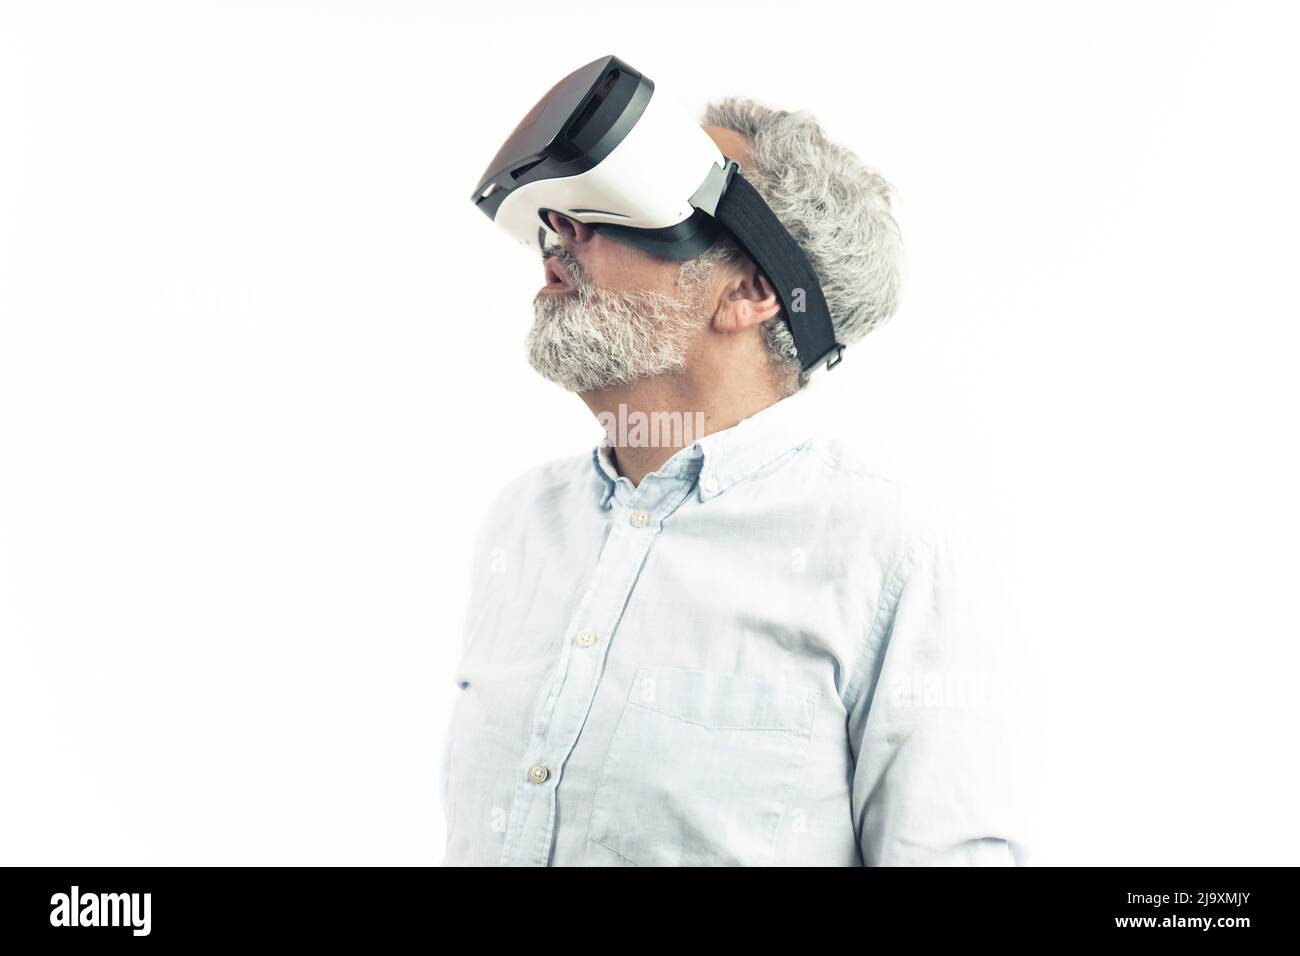 Virtual Reality für alle. Staunender europäischer silberhaariger Erwachsener in einem Hemd mit professioneller VR-Brille auf weißem Hintergrund. Einzelaufnahme. Hochwertige Fotos Stockfoto